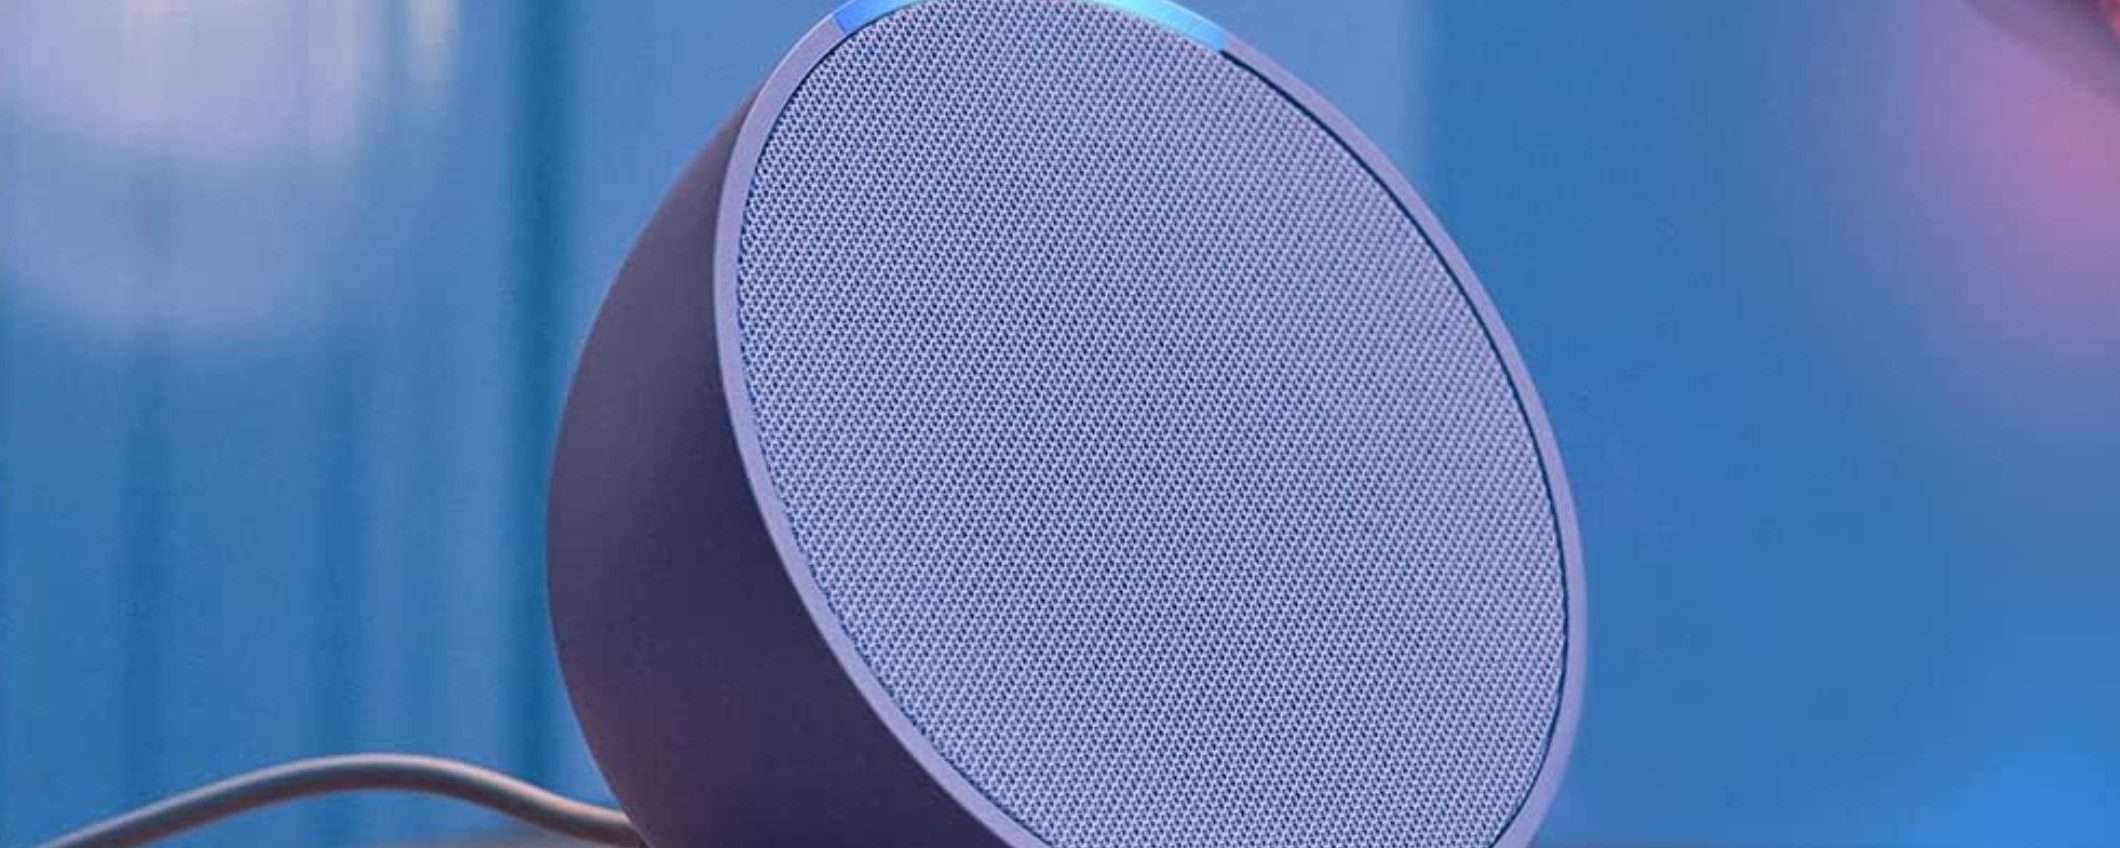 Echo Pop, l'altoparlante intelligente con Alexa, è in sconto a 29,99 euro